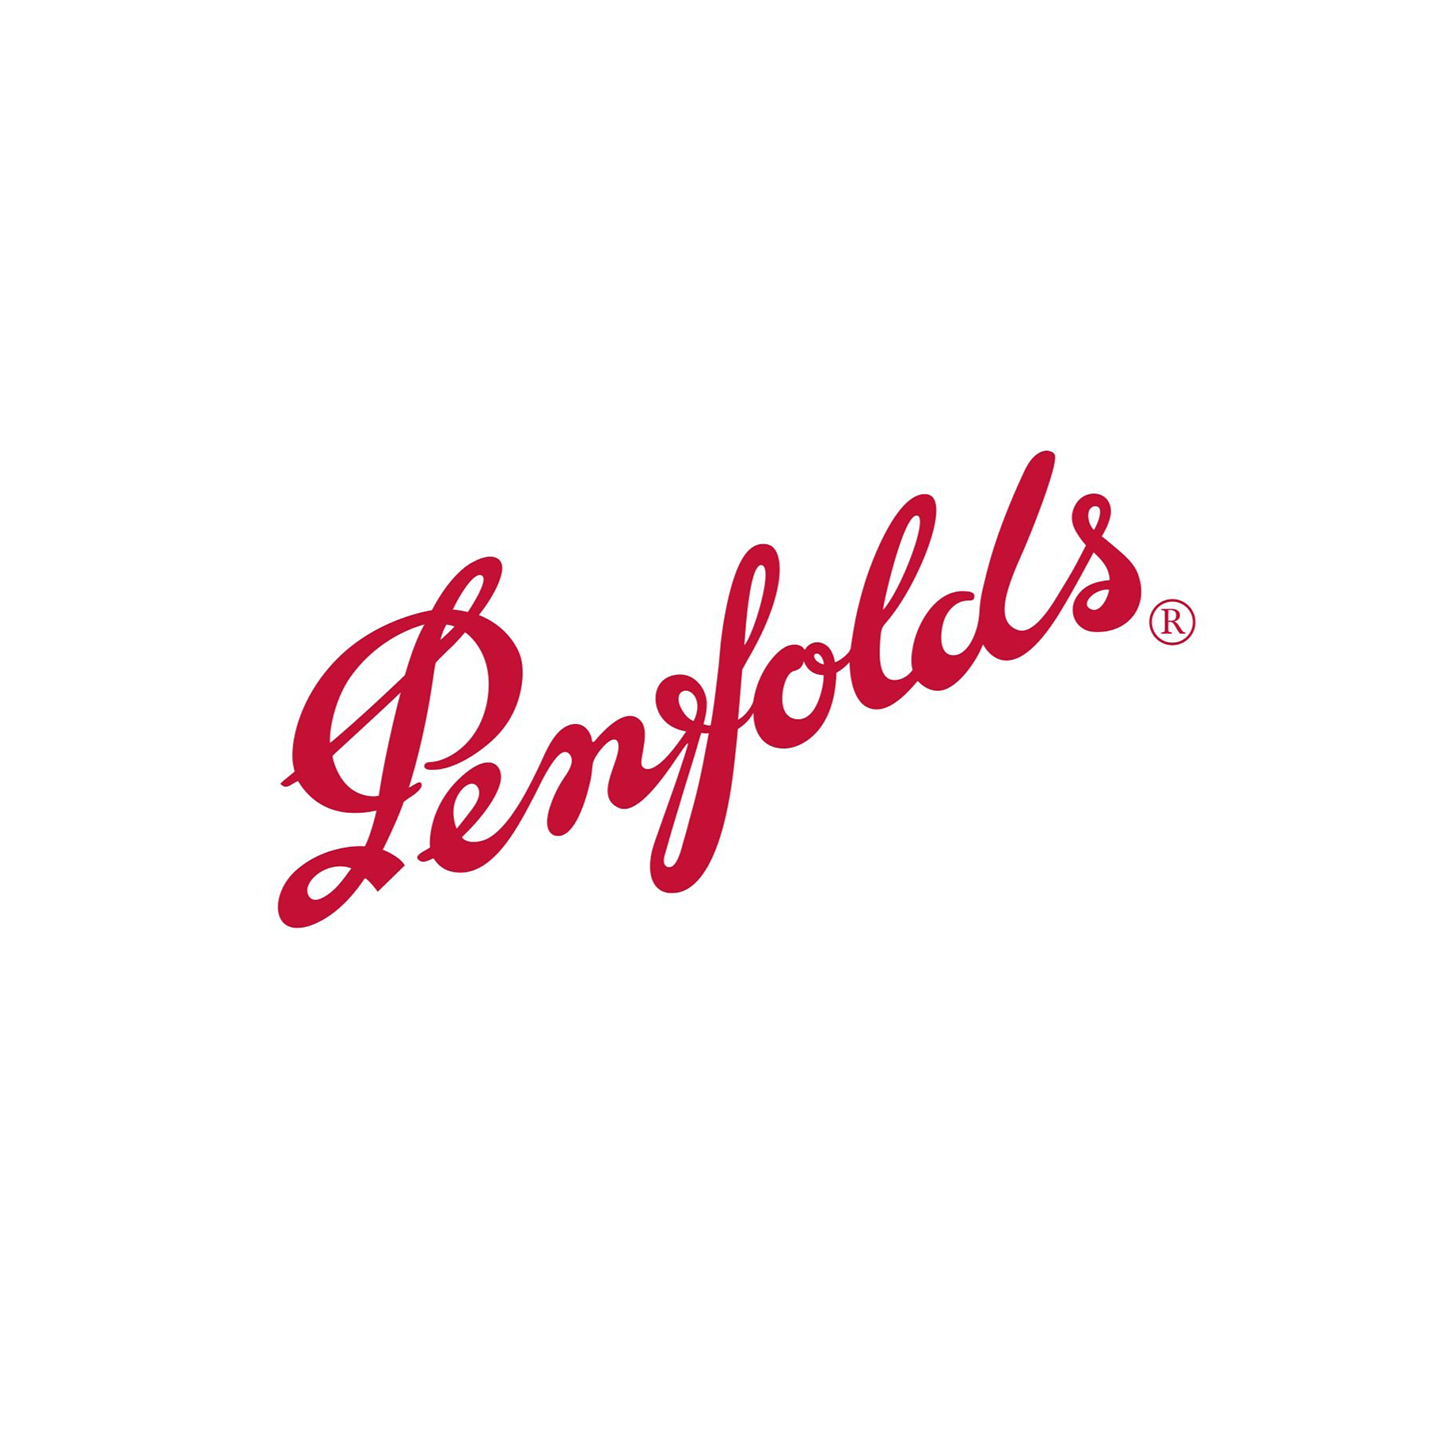 Penfolds 